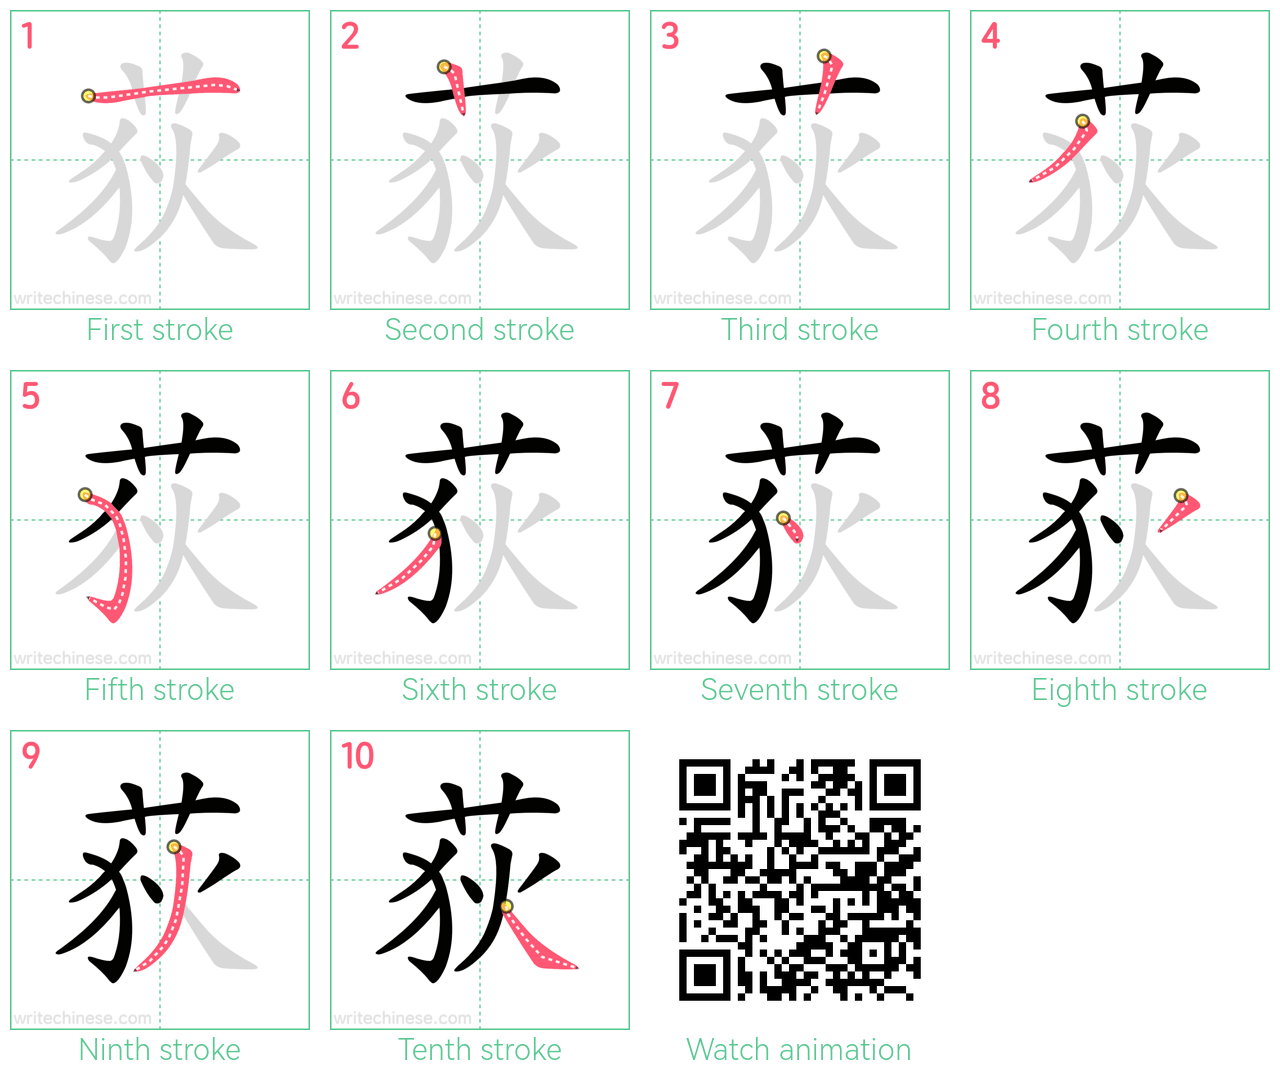 荻 step-by-step stroke order diagrams